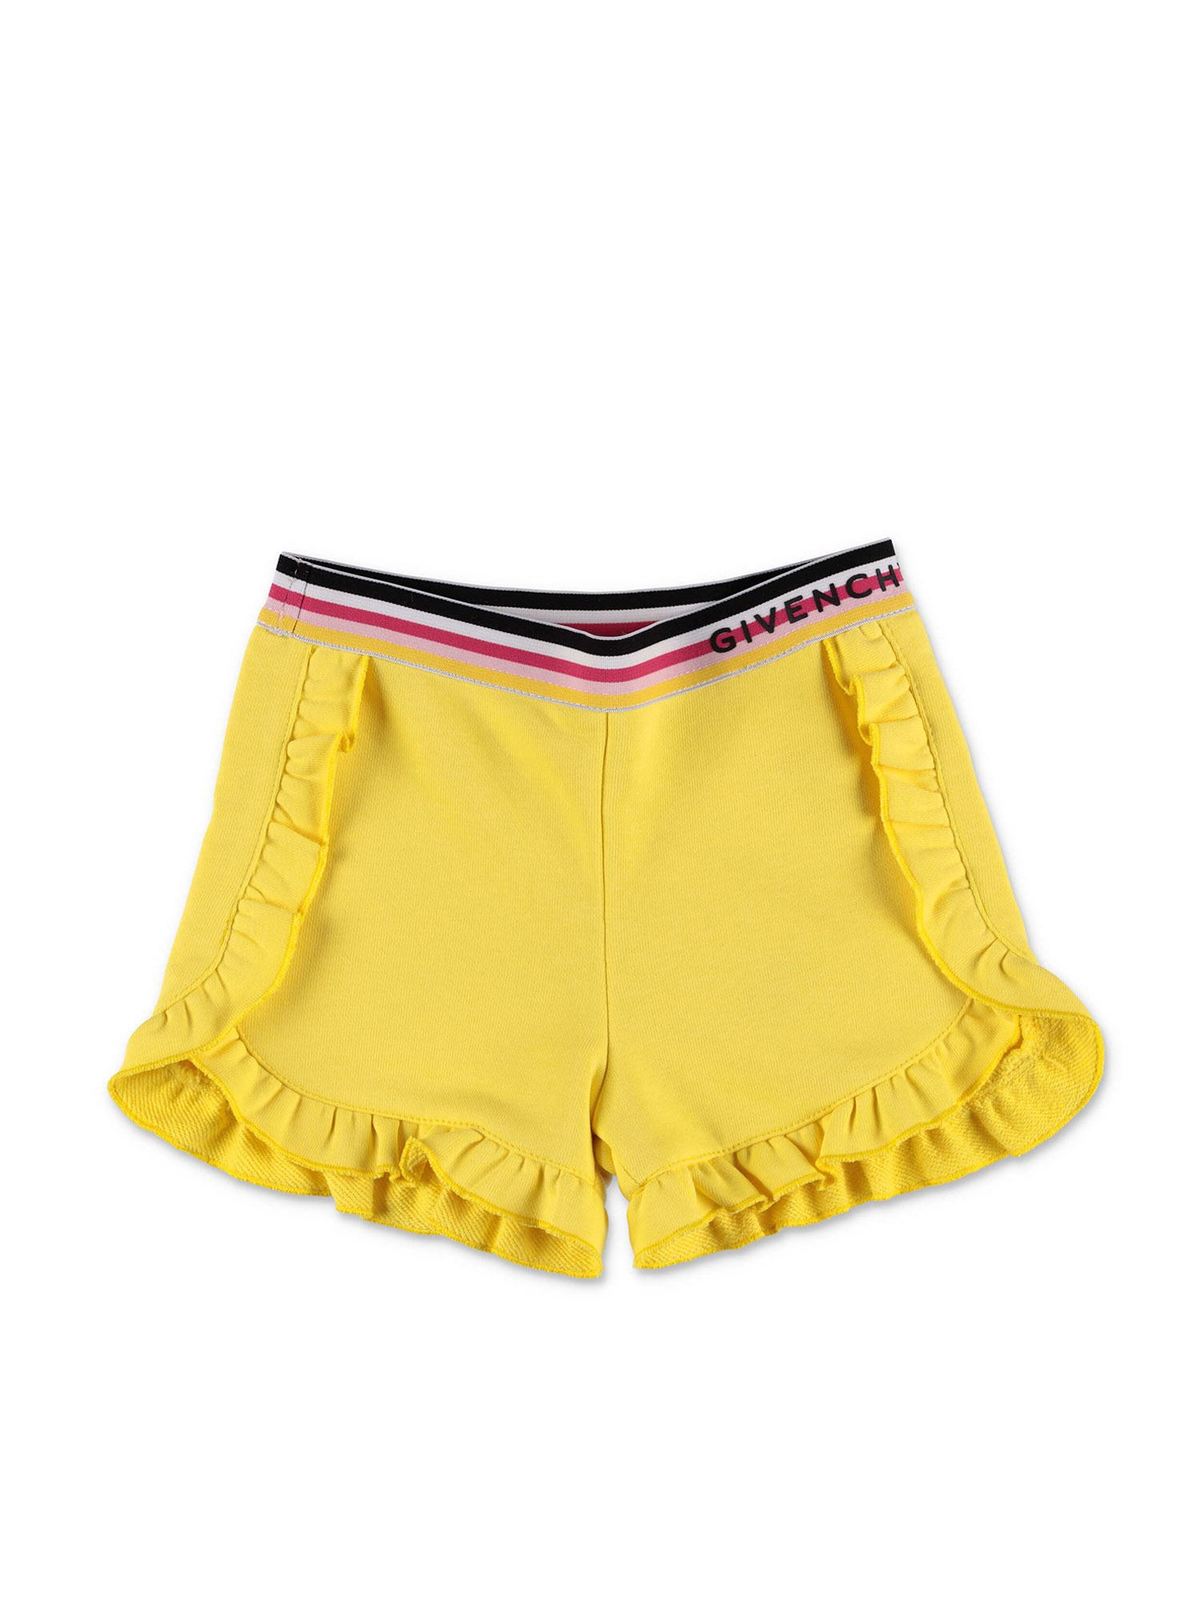 Givenchy Kids' Yellow Logo Shorts